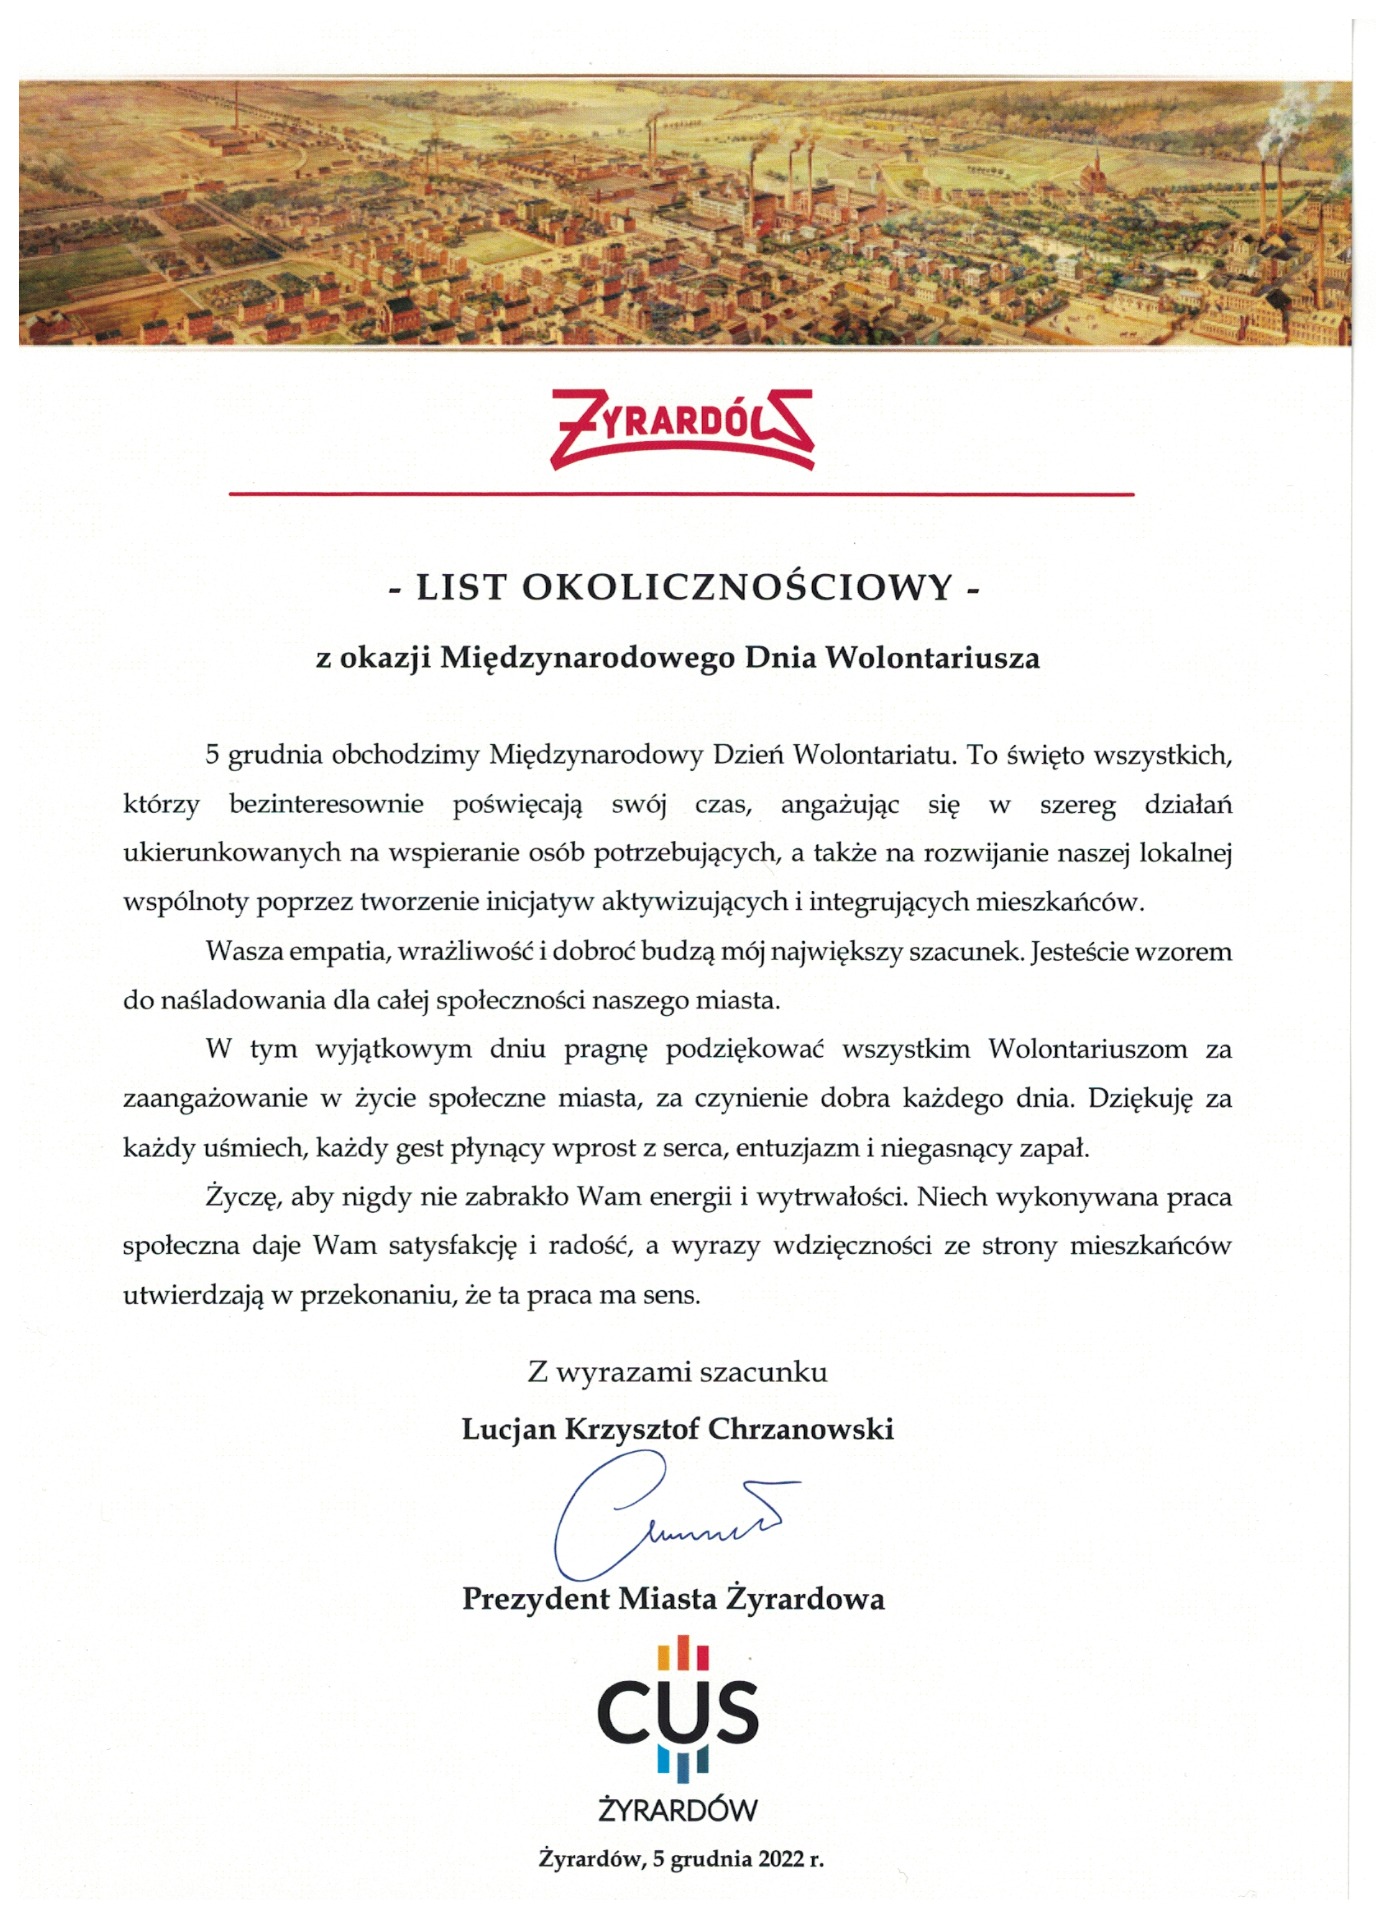 List okolicznościowy wręczany wolontariuszom przez Prezydenta Lucjana Krzysztofa Chrzanowskiego z okazji Międzynarodowego Dnia Wolontariatu .png